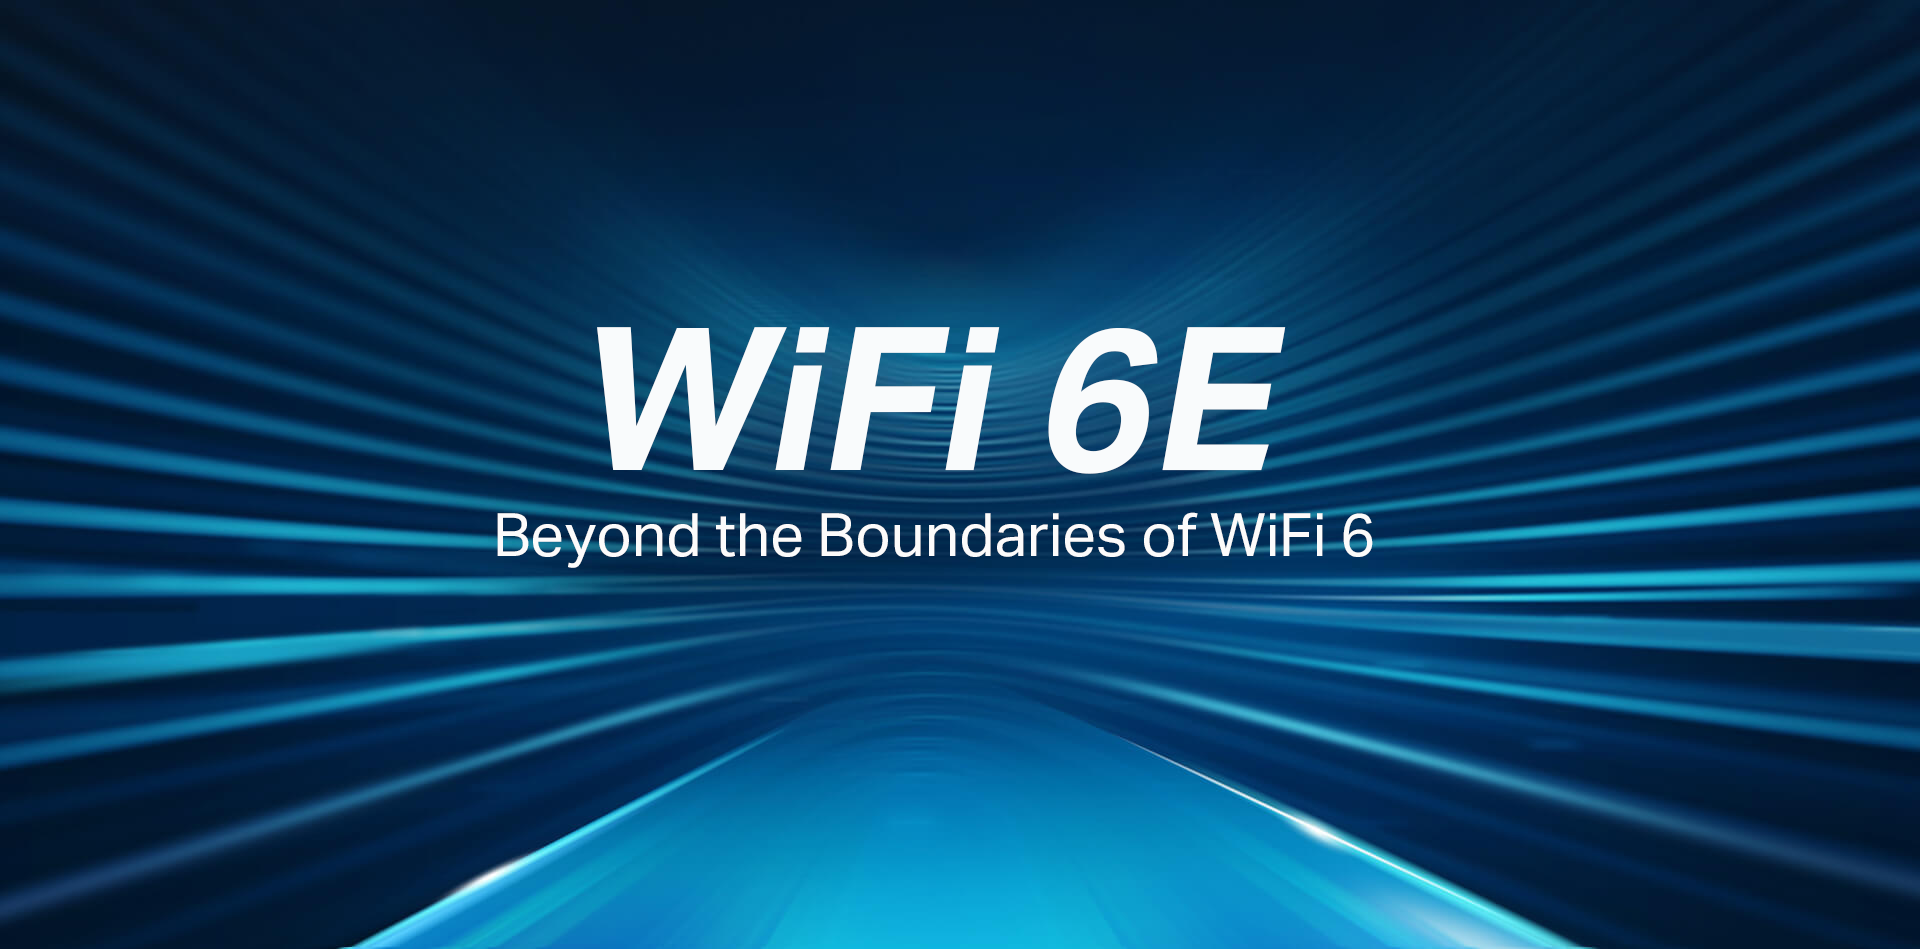 ได้ใช้จริงแล้ว เทคโนโลยี Wi-Fi 6E ยกระดับการบริการและการศึกษาทางการแพทย์